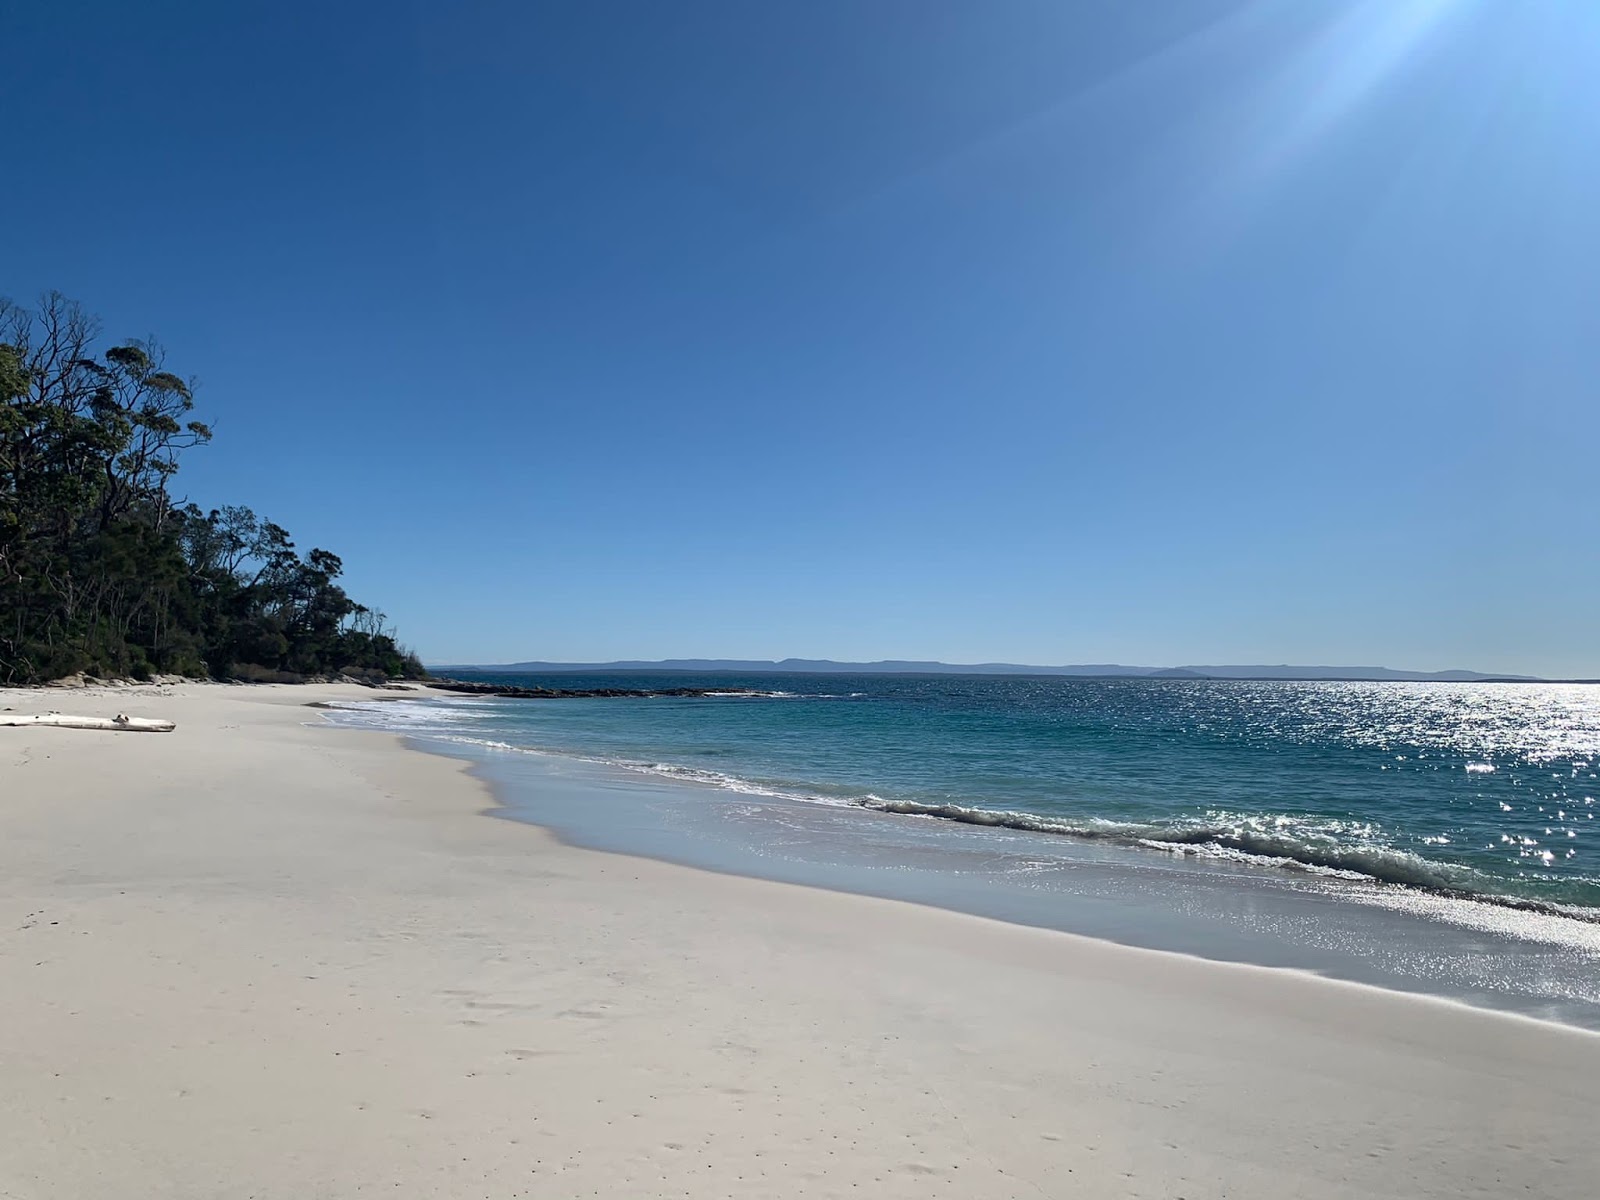 Zdjęcie Murrays Beach z przestronna plaża